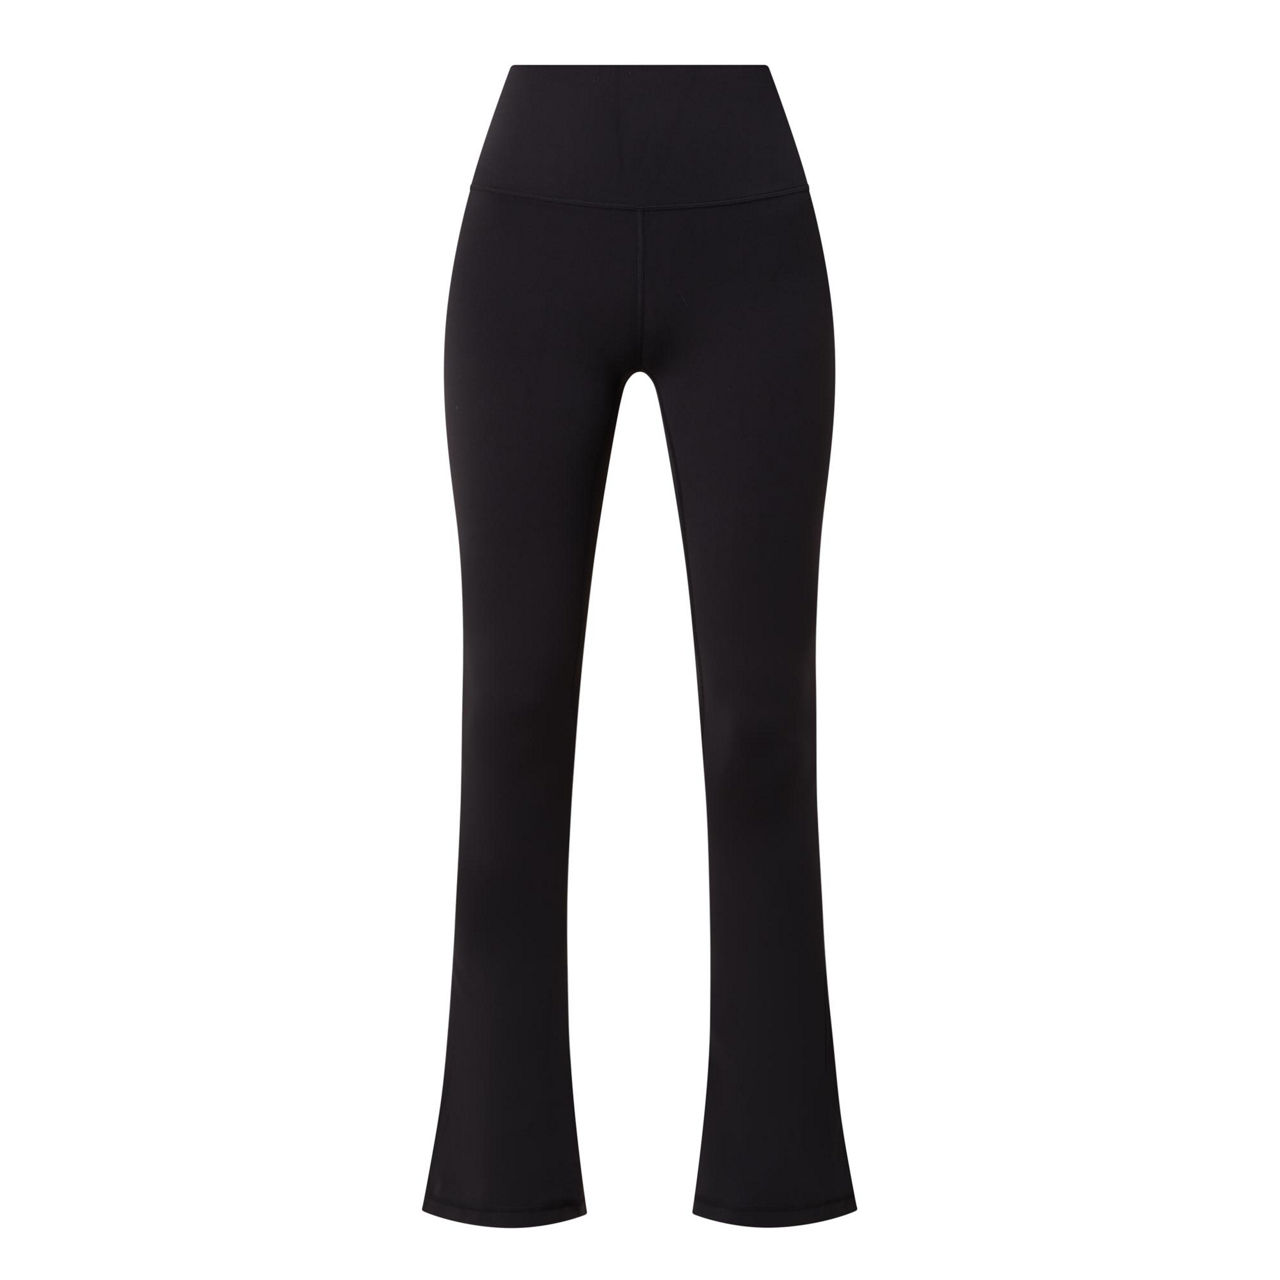 lululemon Align™ High-Rise Mini-Flared Pant Extra Short Black Size